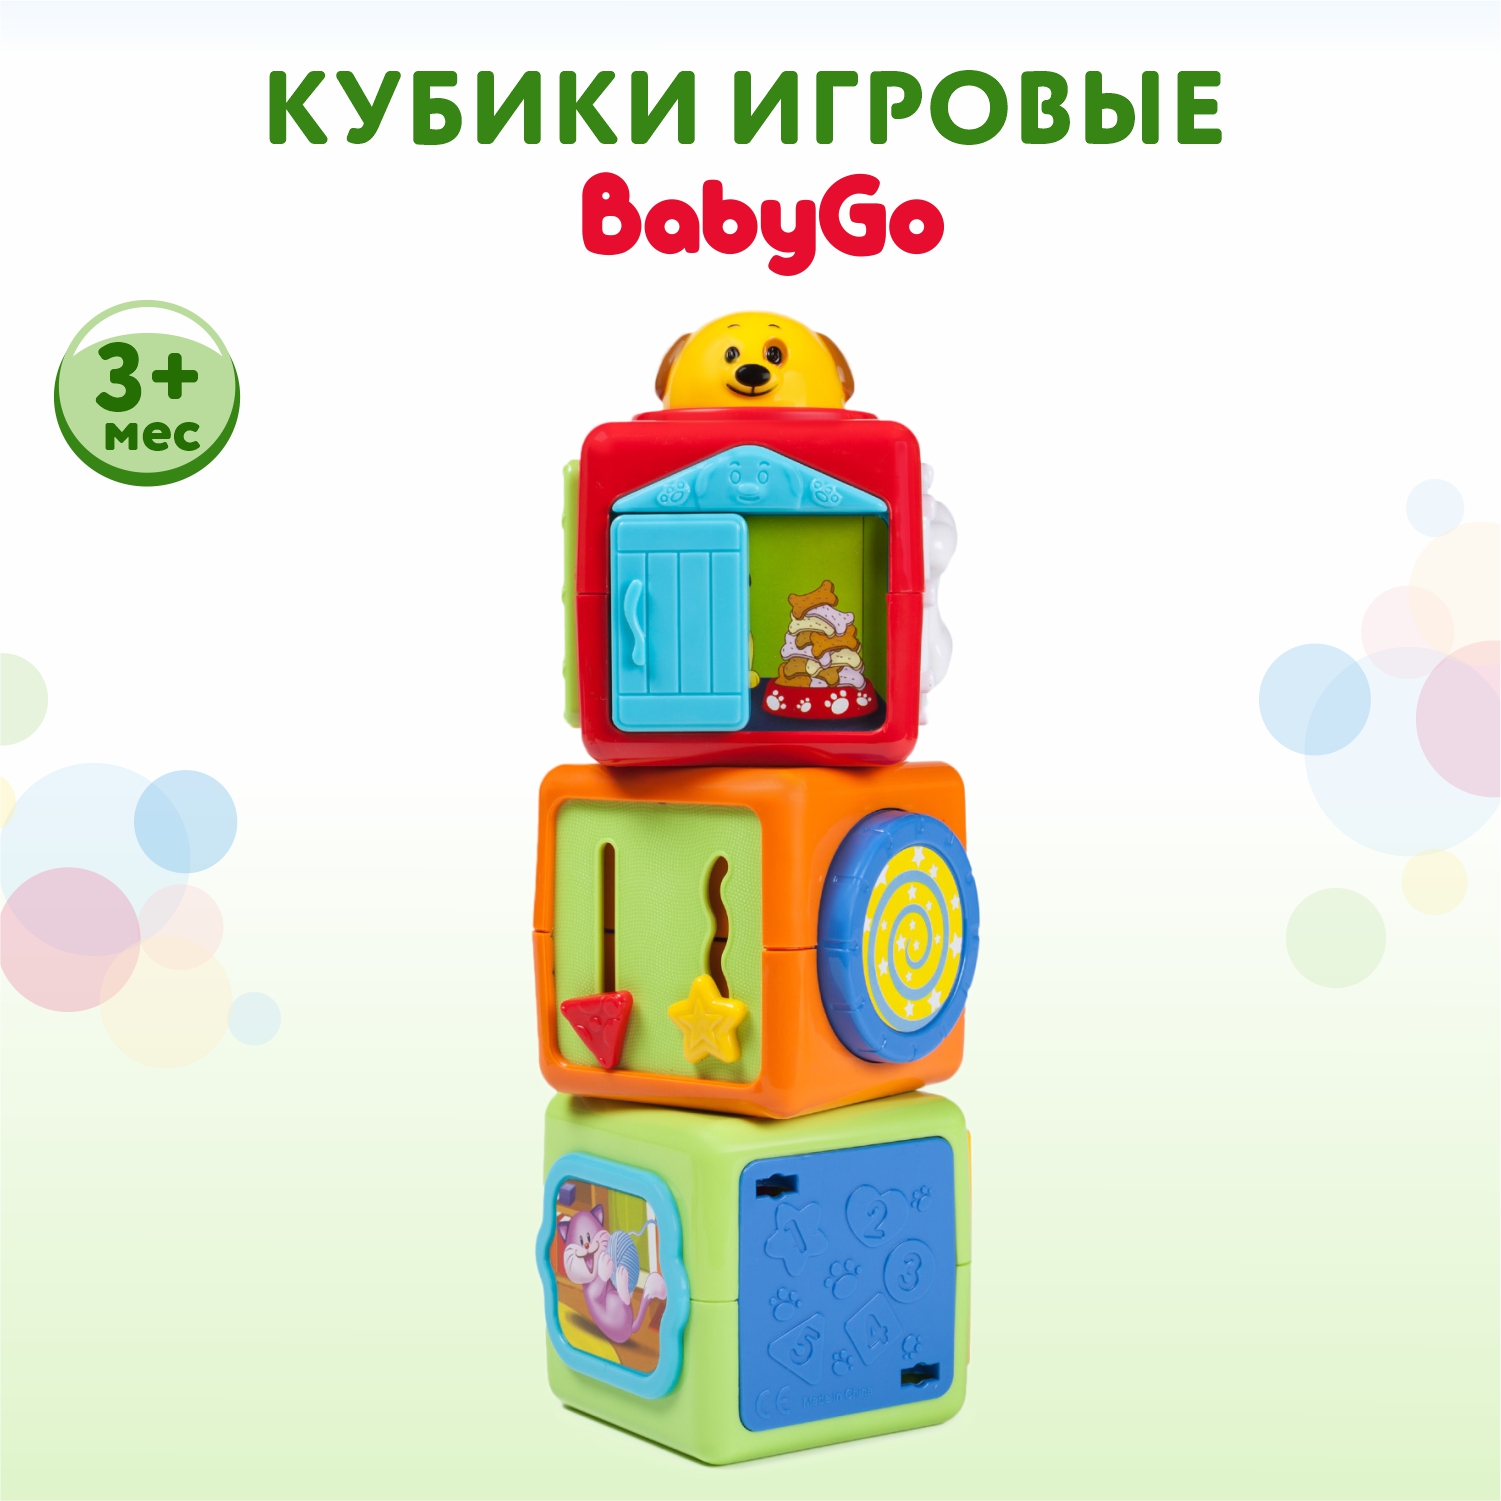 Кубики BabyGo игровые - фото 1